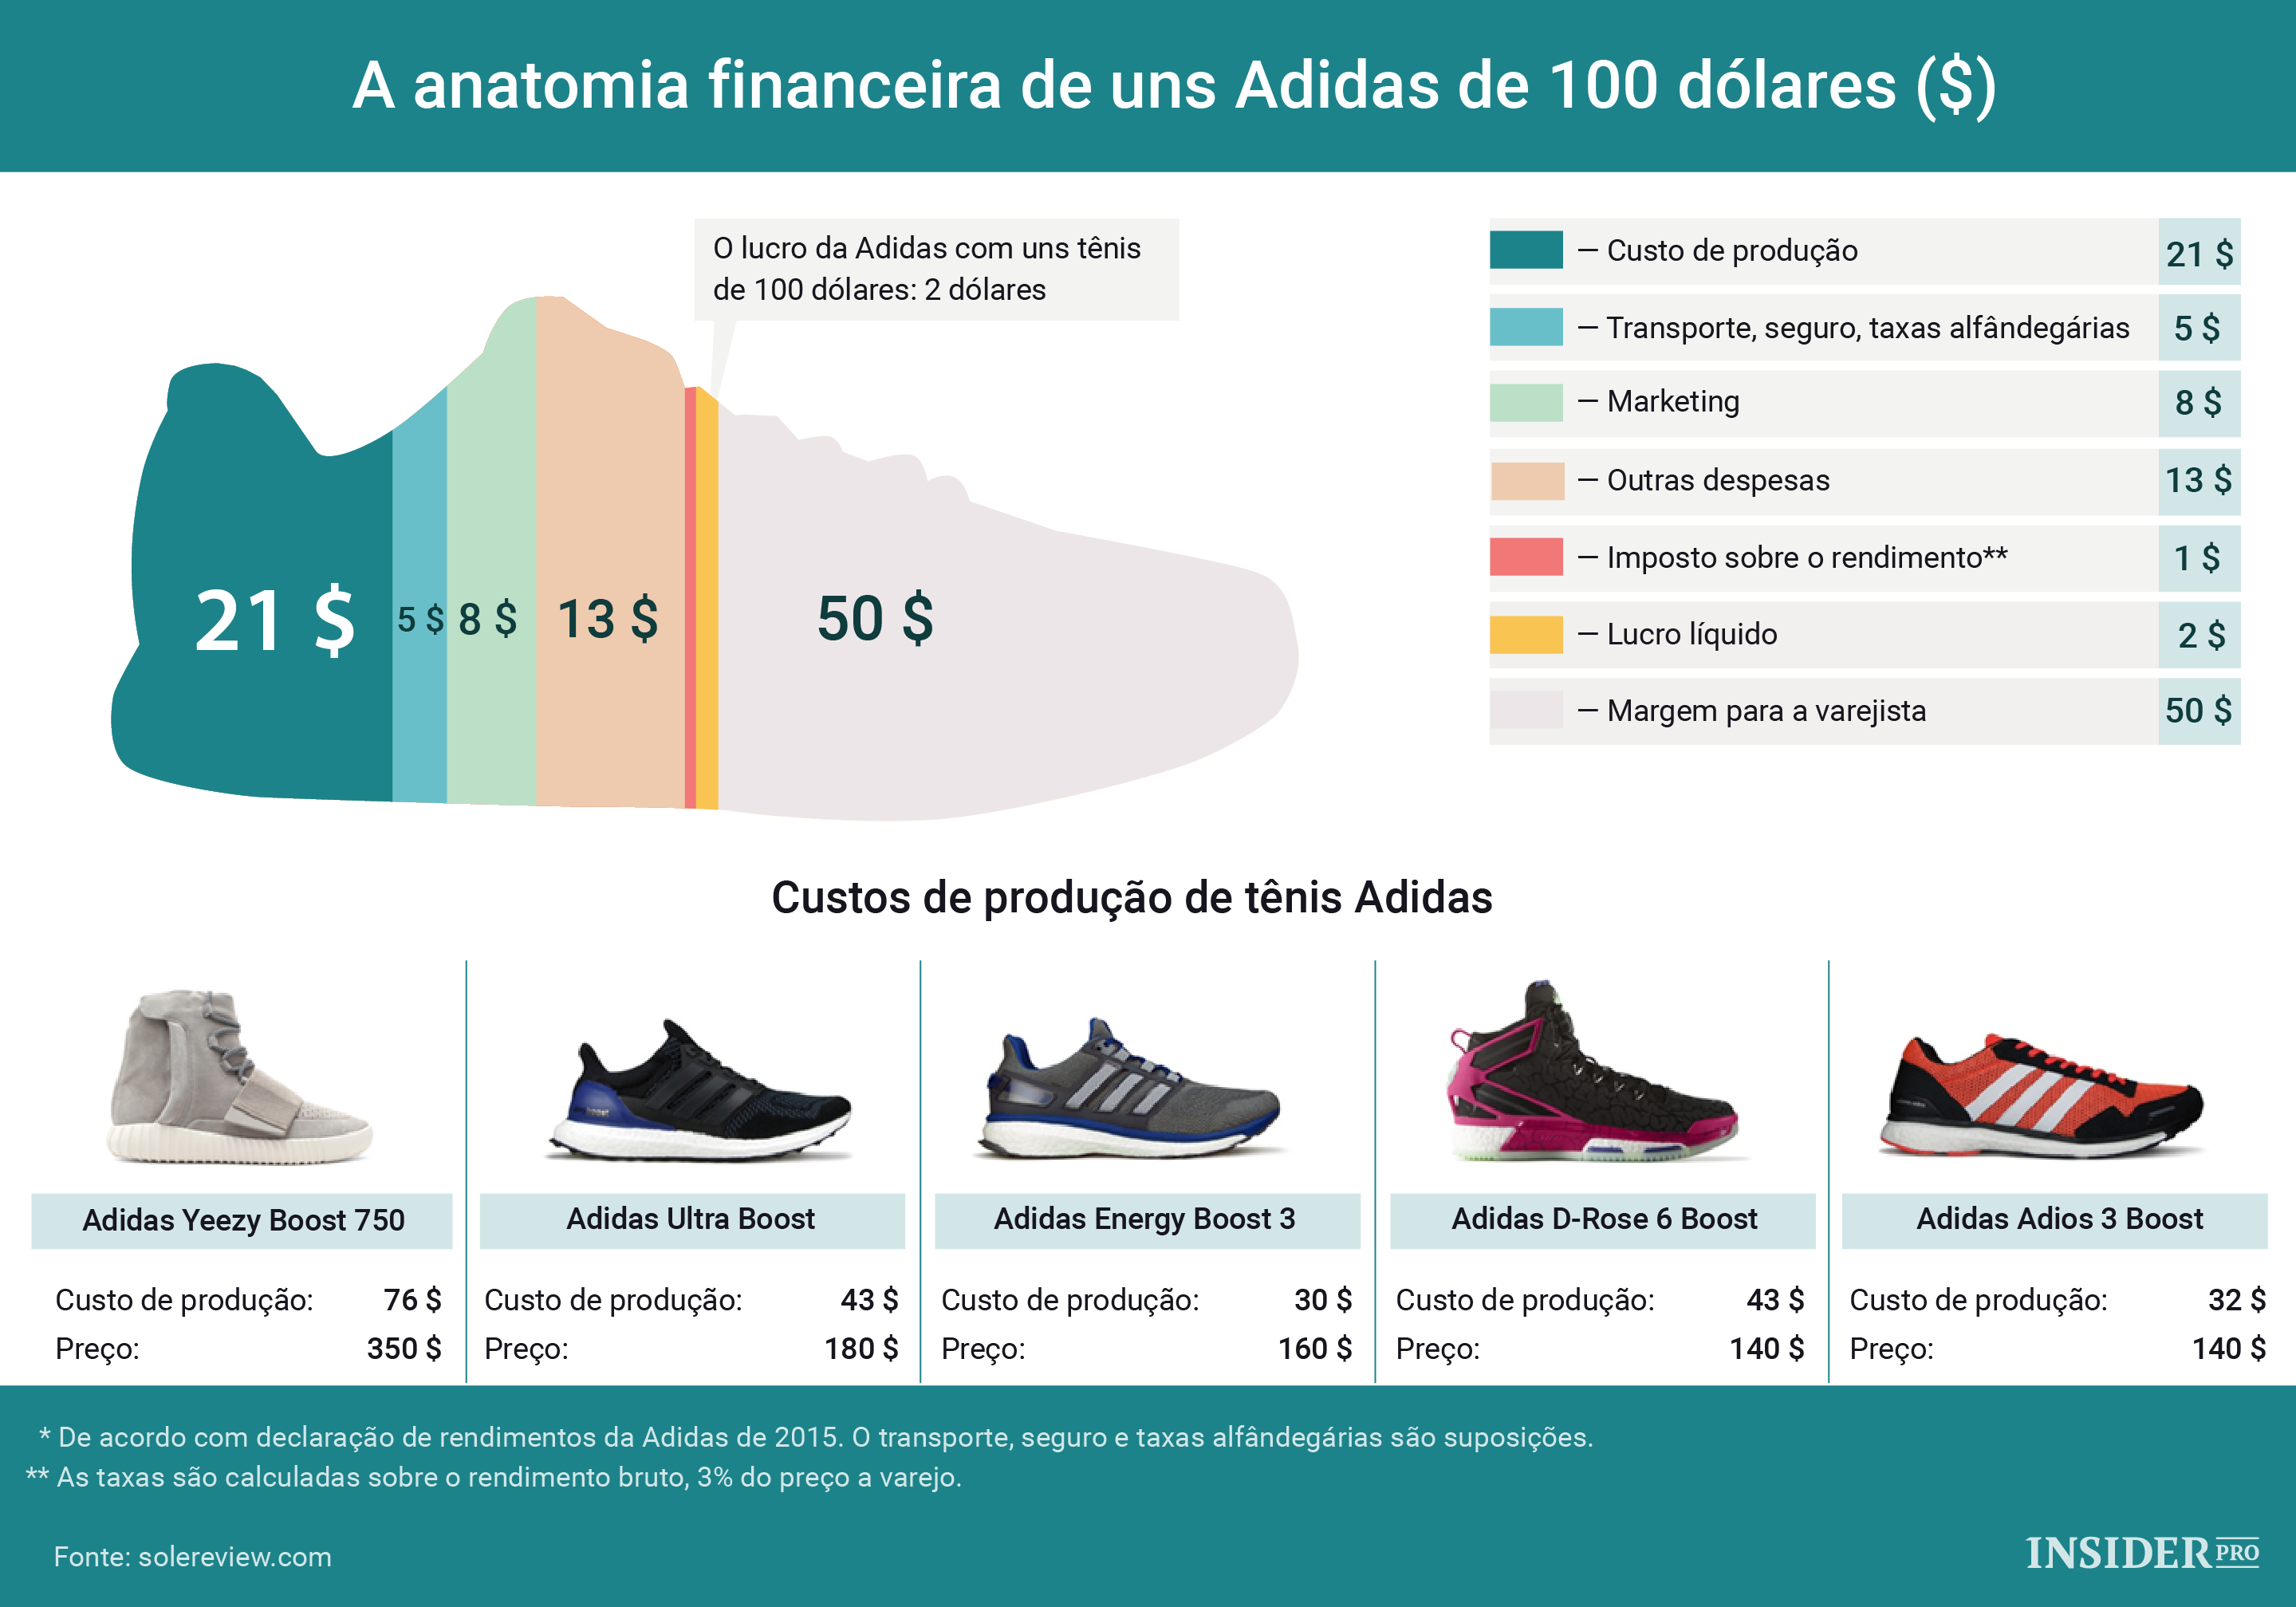 Обувь какой фирмы лучше. Кроссовки adidas 2021-2022. Себестоимость кроссовок. Самые популярные модели кроссовок. Типы спортивной обуви.